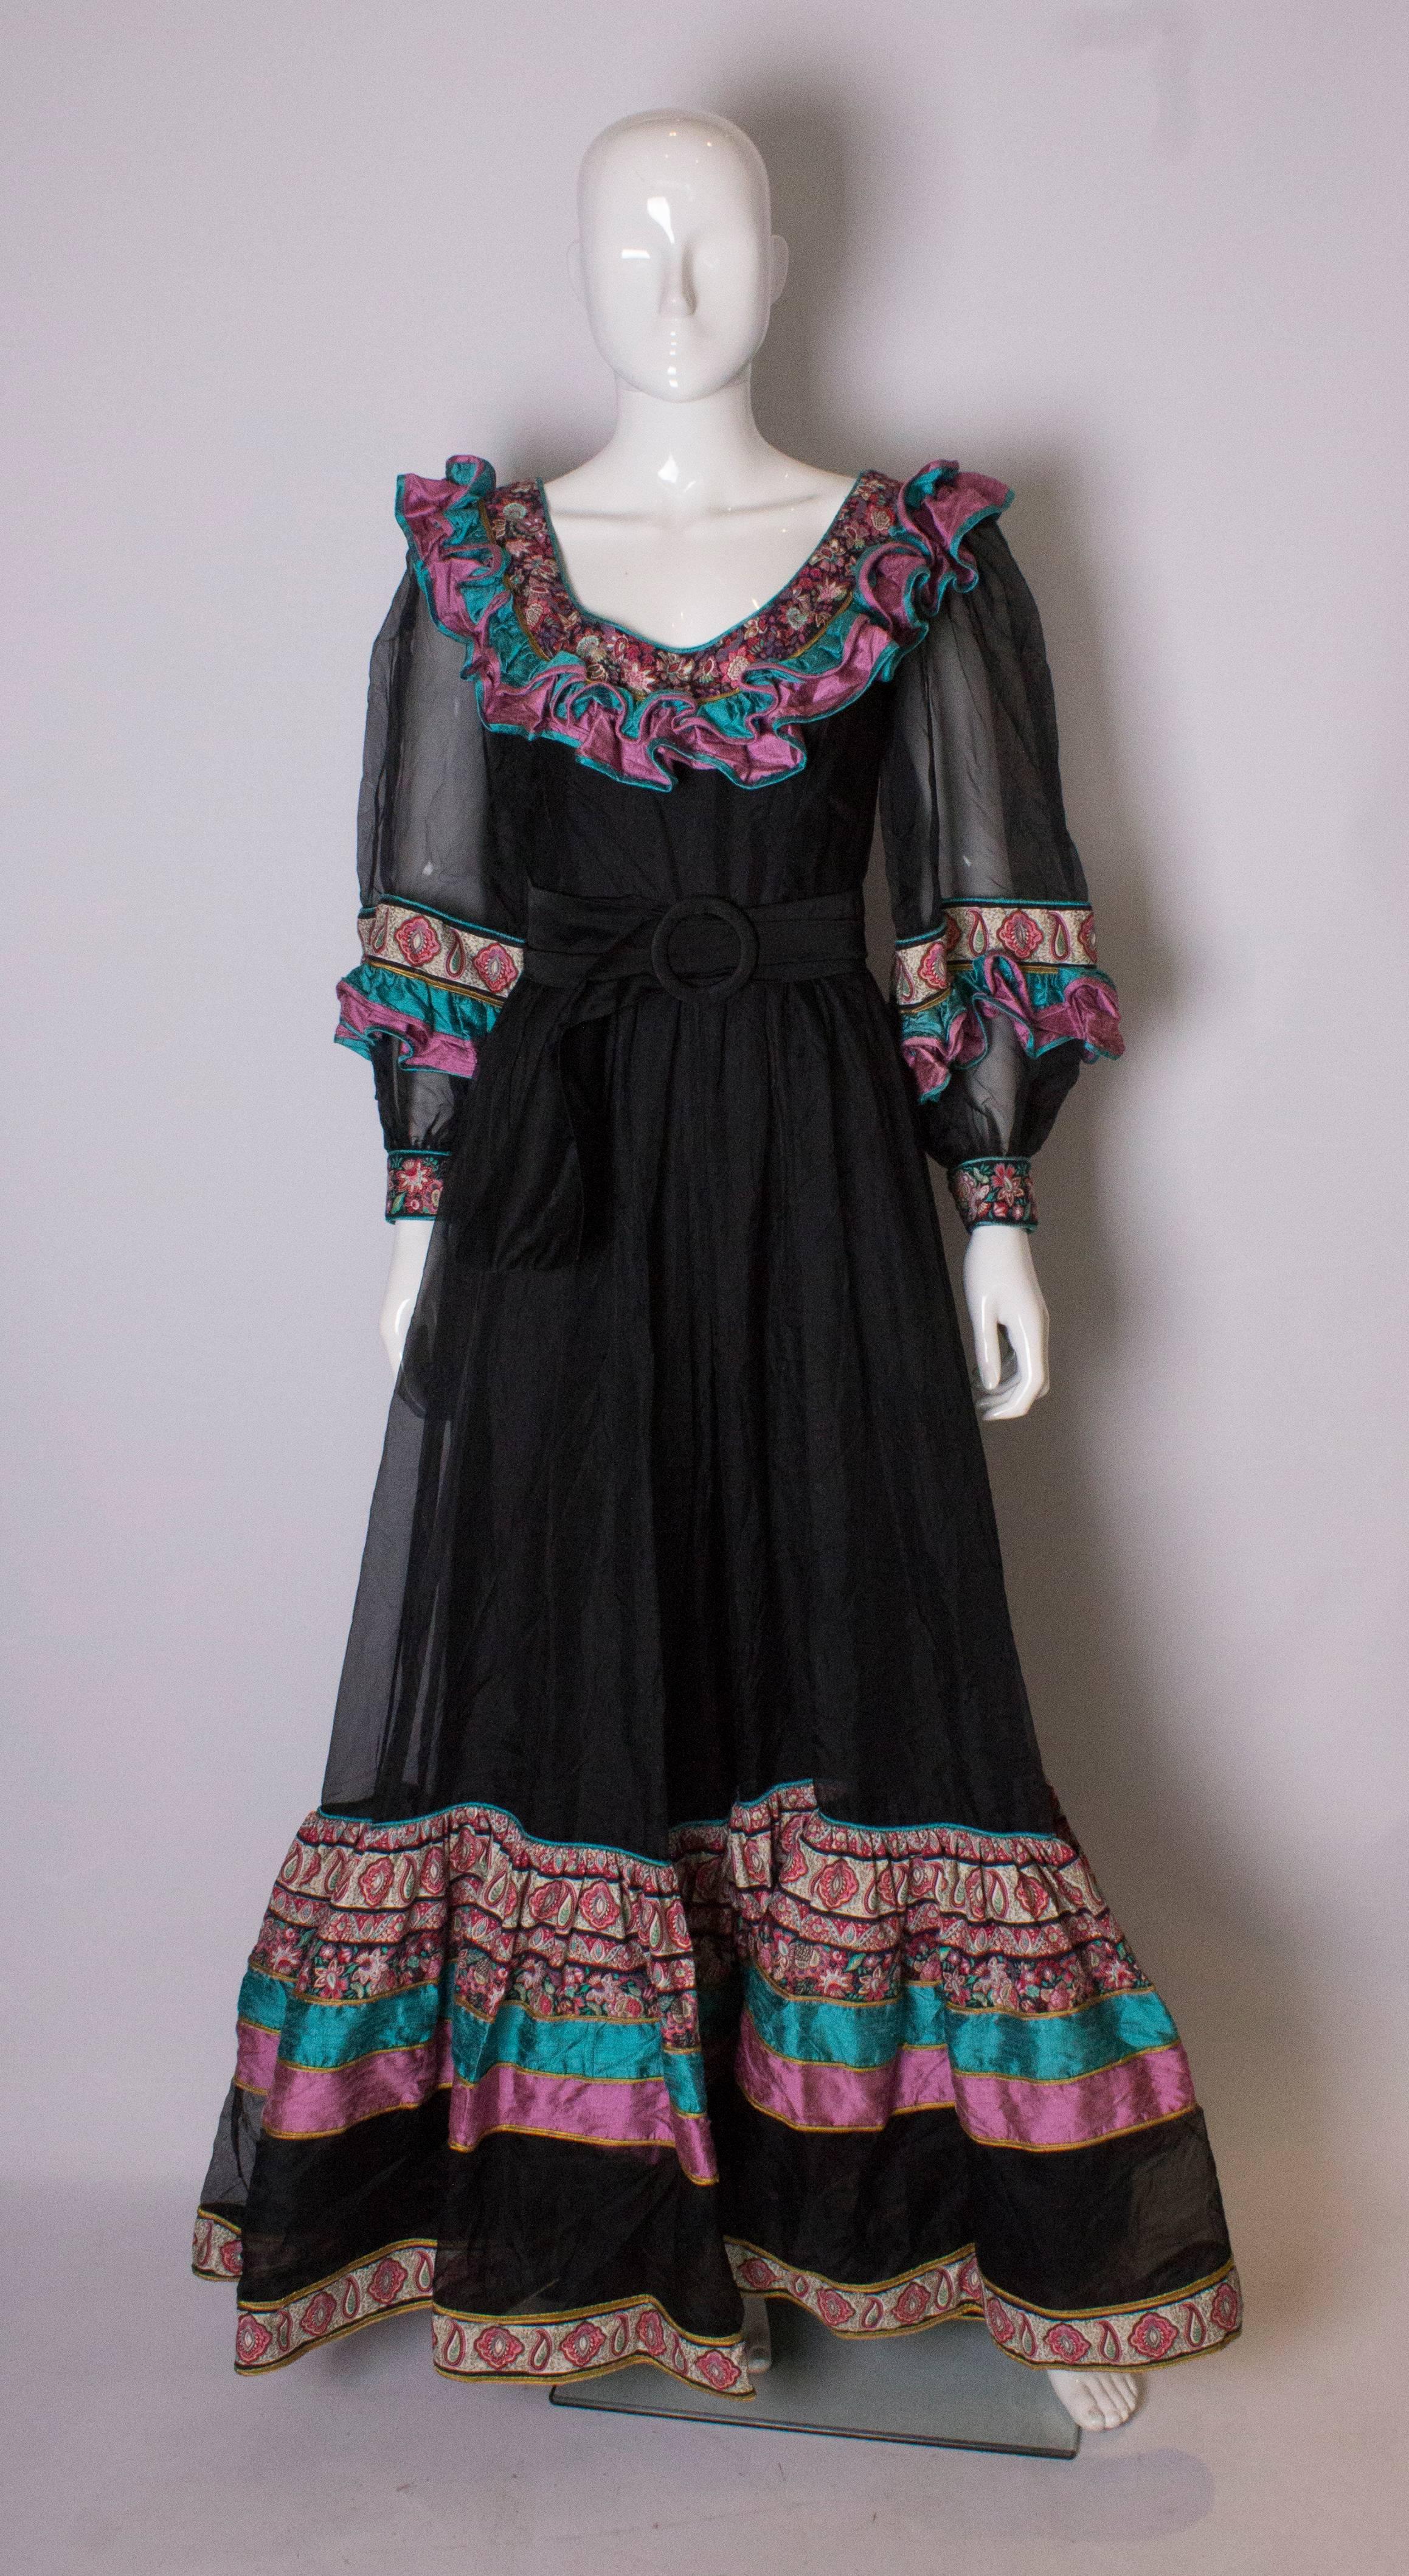  Une robe vintage étonnante par Regamus, Londres. La robe a un décolleté en V, avec des volants imprimés en soie sur l'encolure et l'ourlet. Il est doté d'une fermeture éclair centrale au dos et d'un jupon en soie.